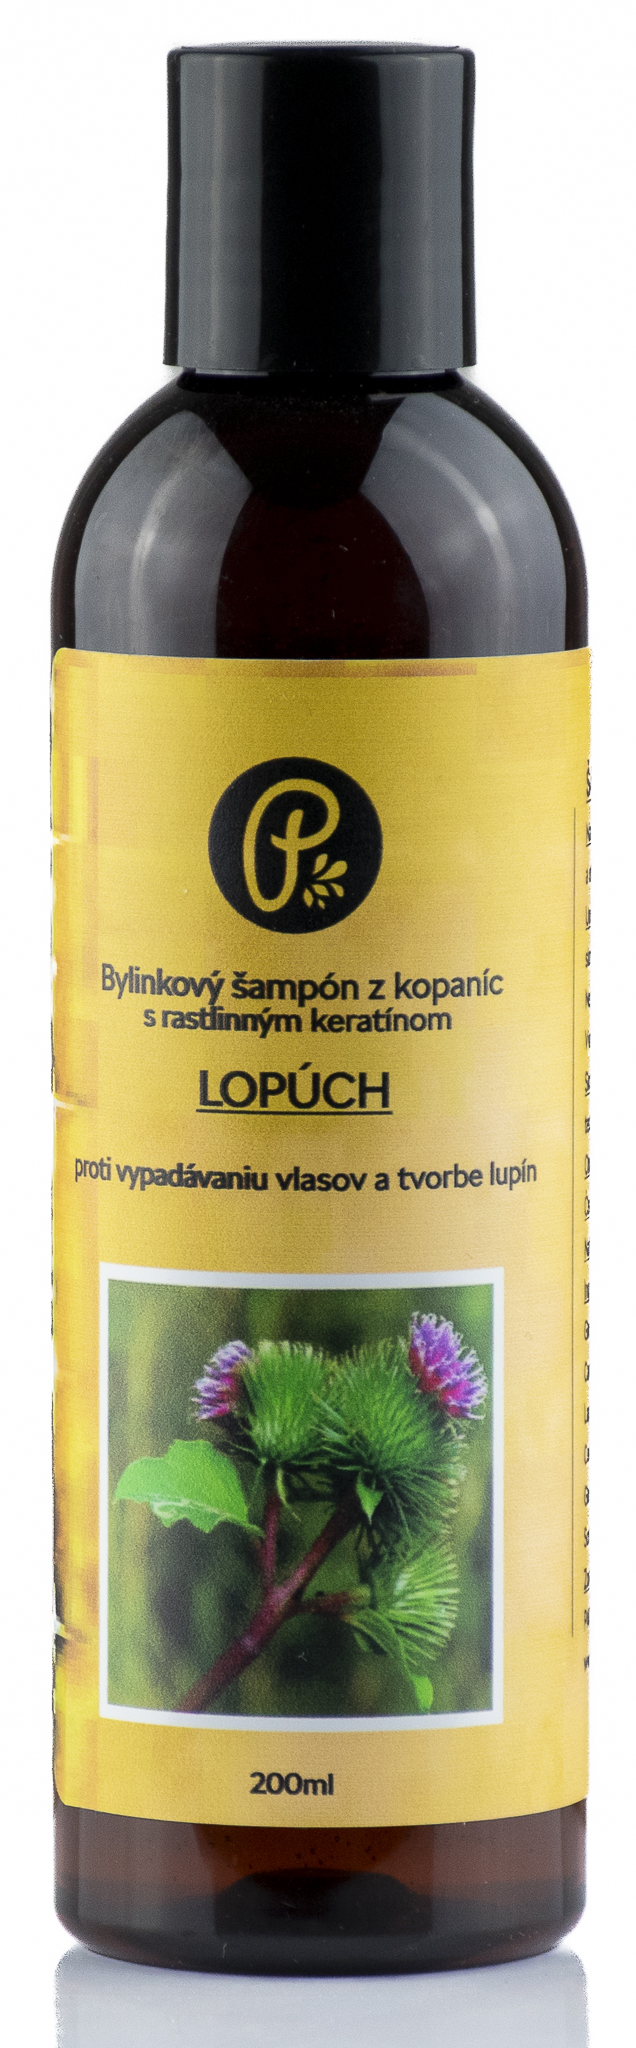 PANAKEIA ŠAMPÓN lopúch - bylinkový s prírodným keratínom proti vypadávaniu vlasov a tvorbe lupín 200ml